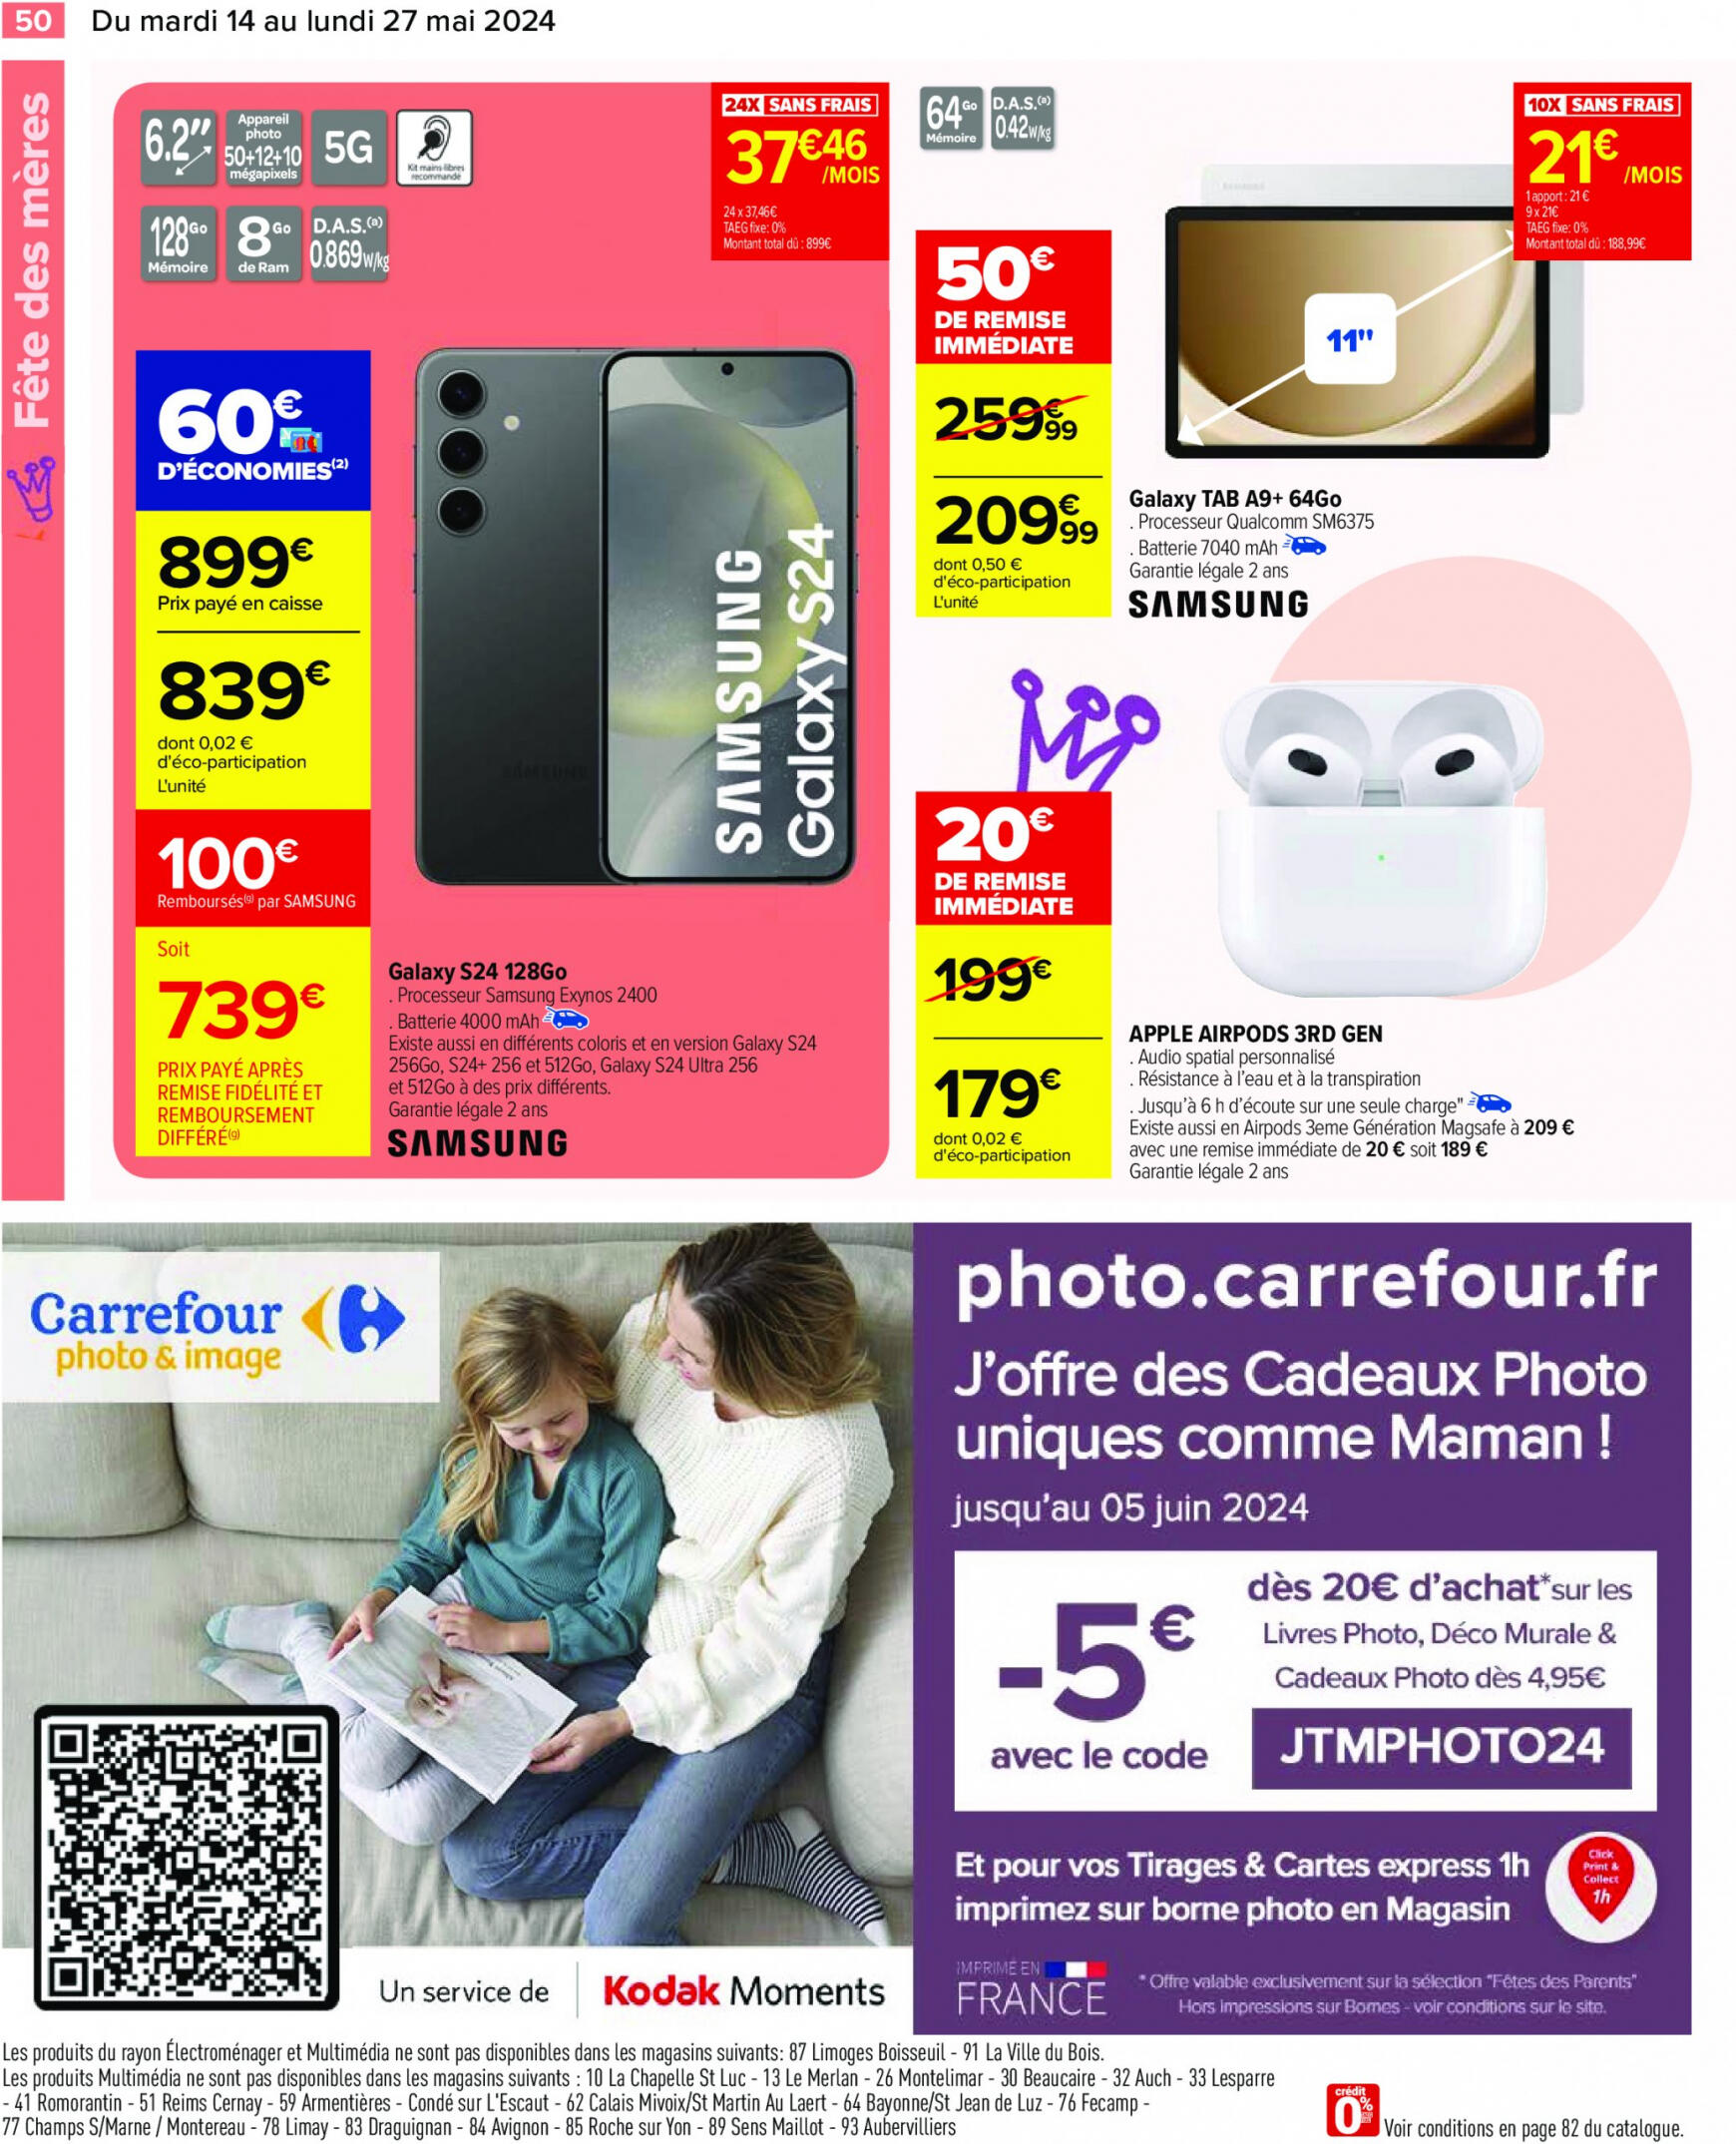 carrefour - Prospectus Carrefour actuel 14.05. - 27.05. - page: 52